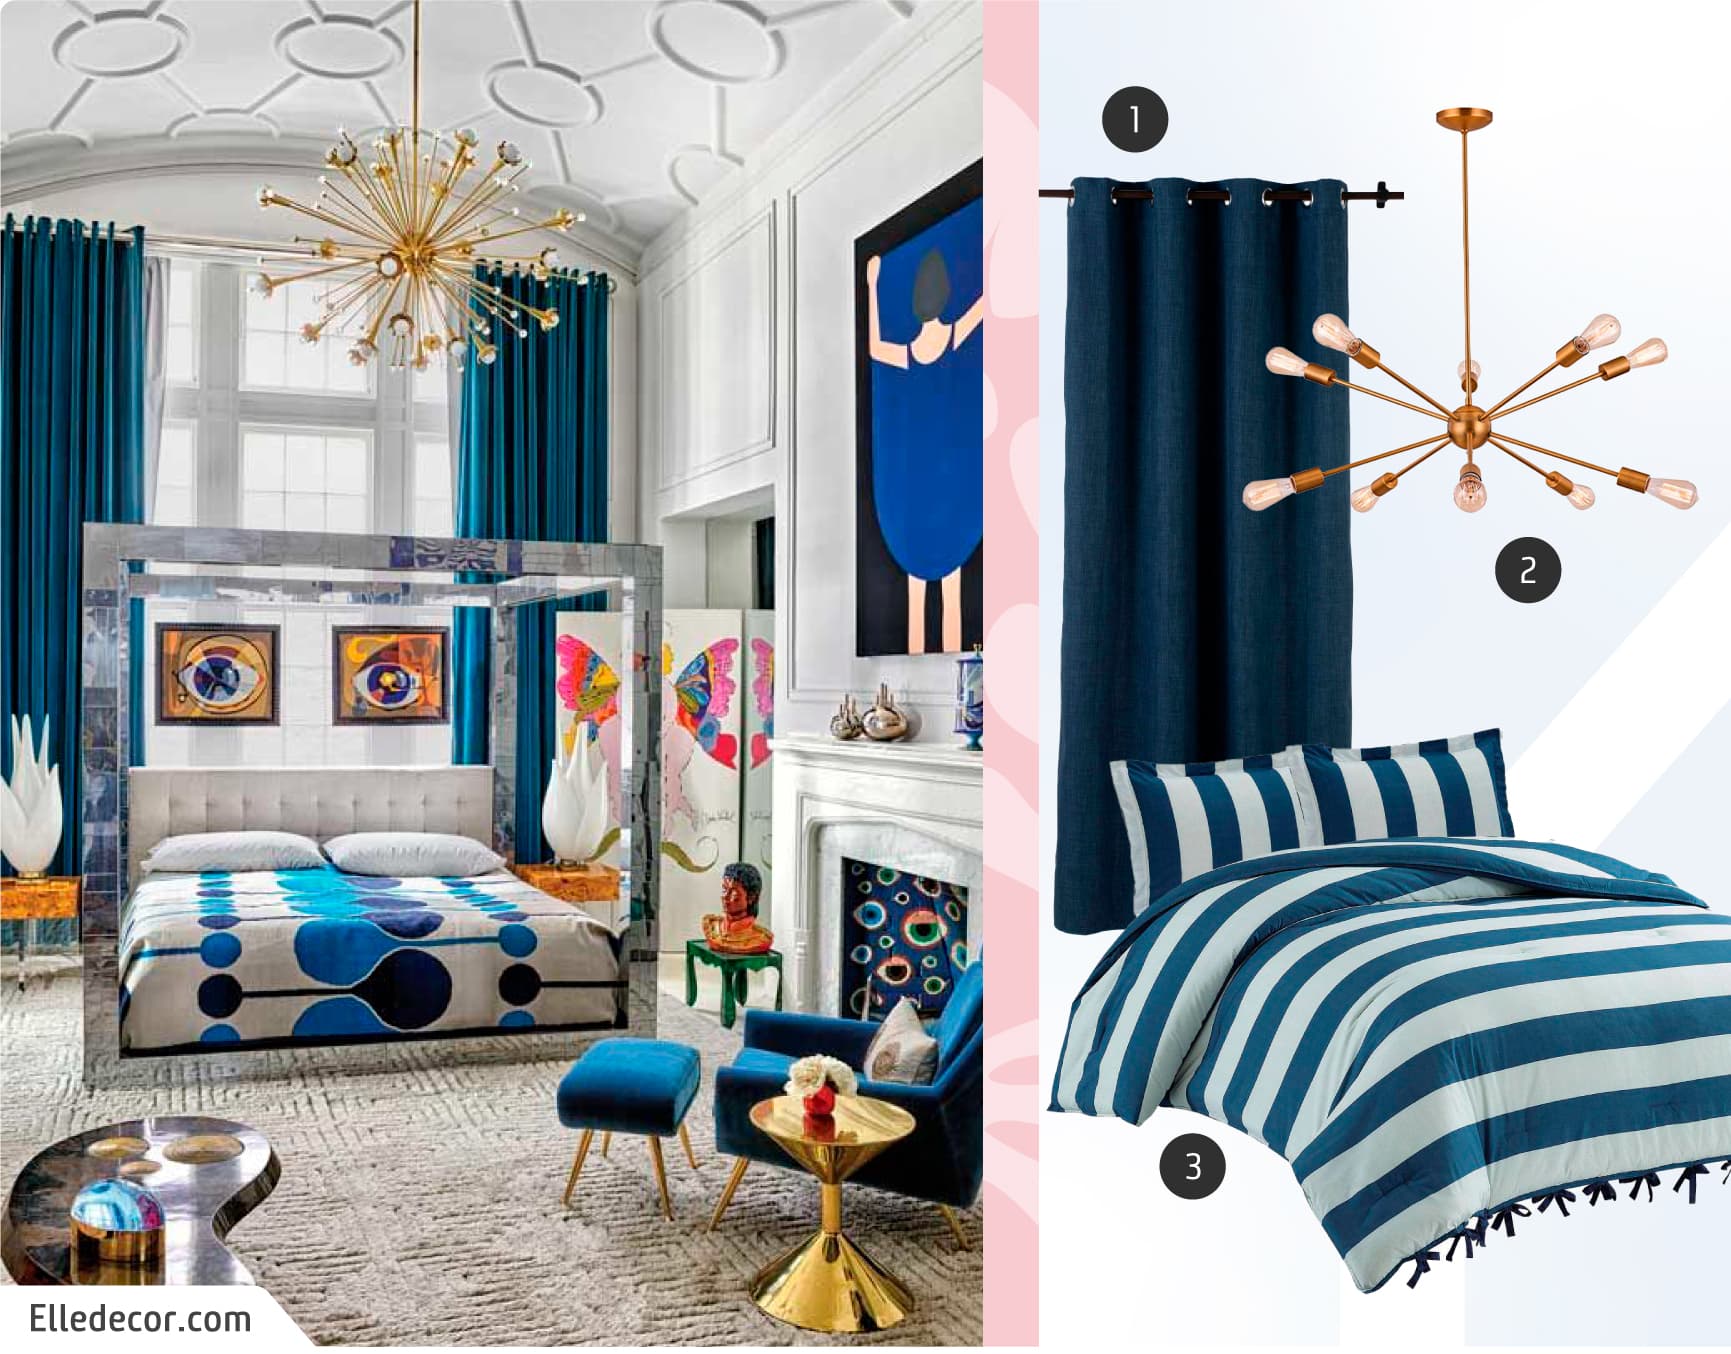 Moodboard de inspiración con una foto de un dormitorio maximalista en tonos azules y dorados, y junto a ella, una cortina azul, cobertor de rayas blancas con azul y una lámpara dorada con varias ampolletas.